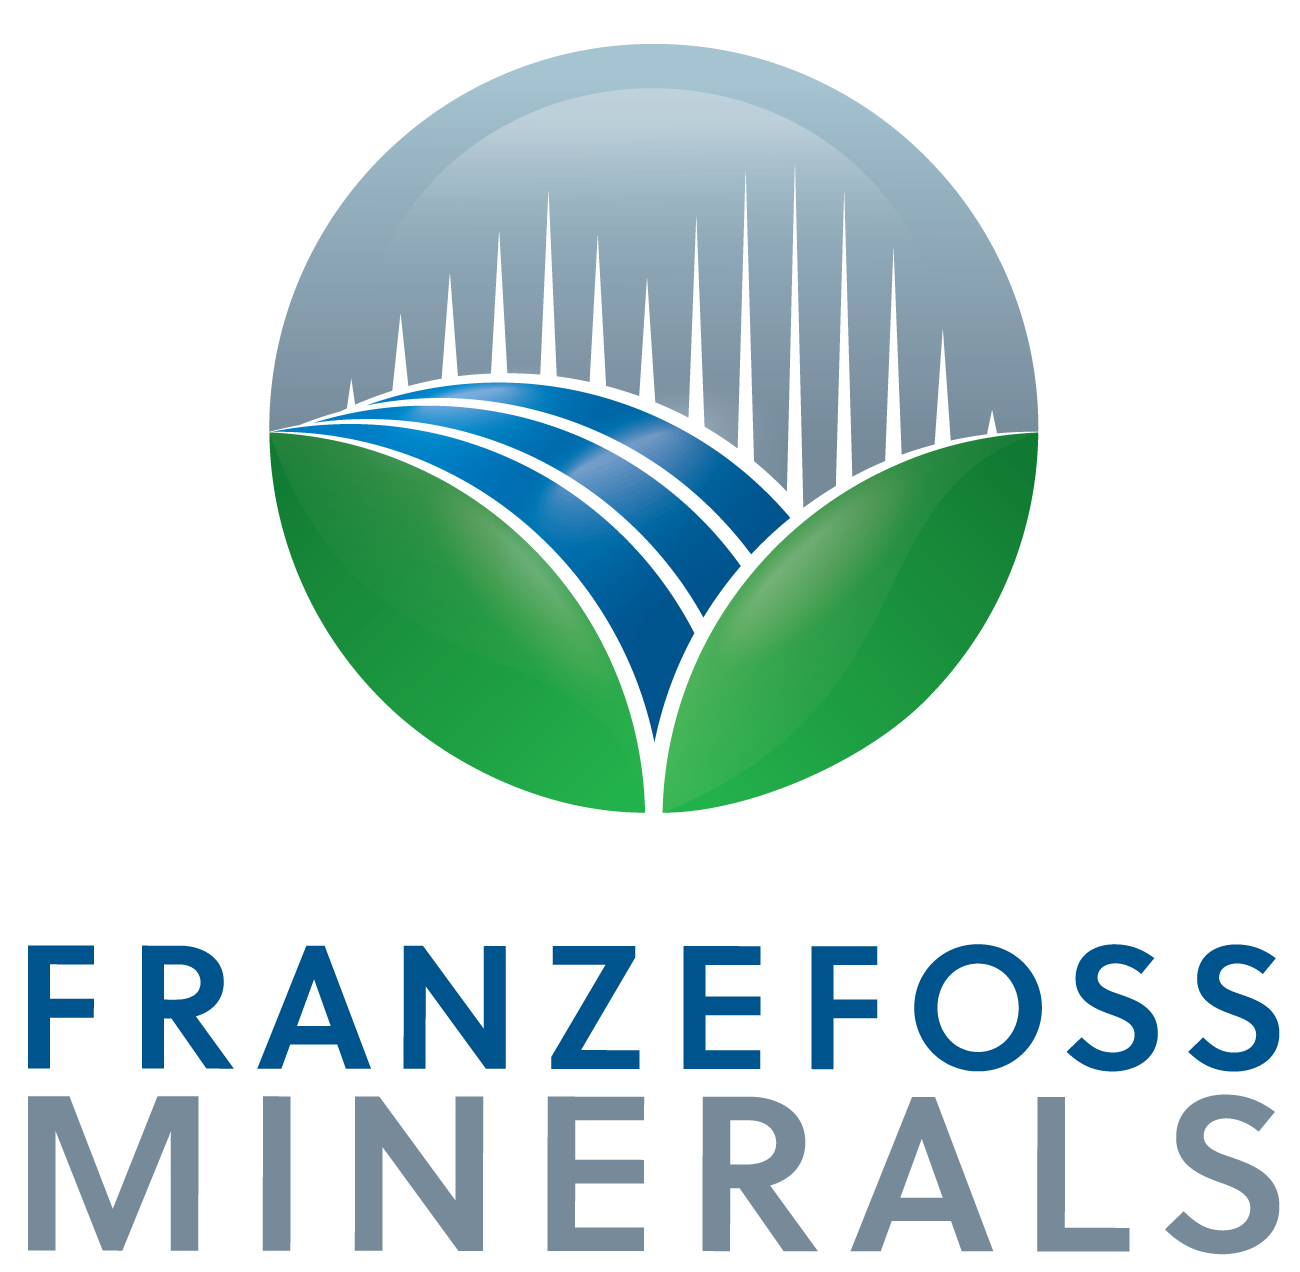 Franzefoss Minerals AS